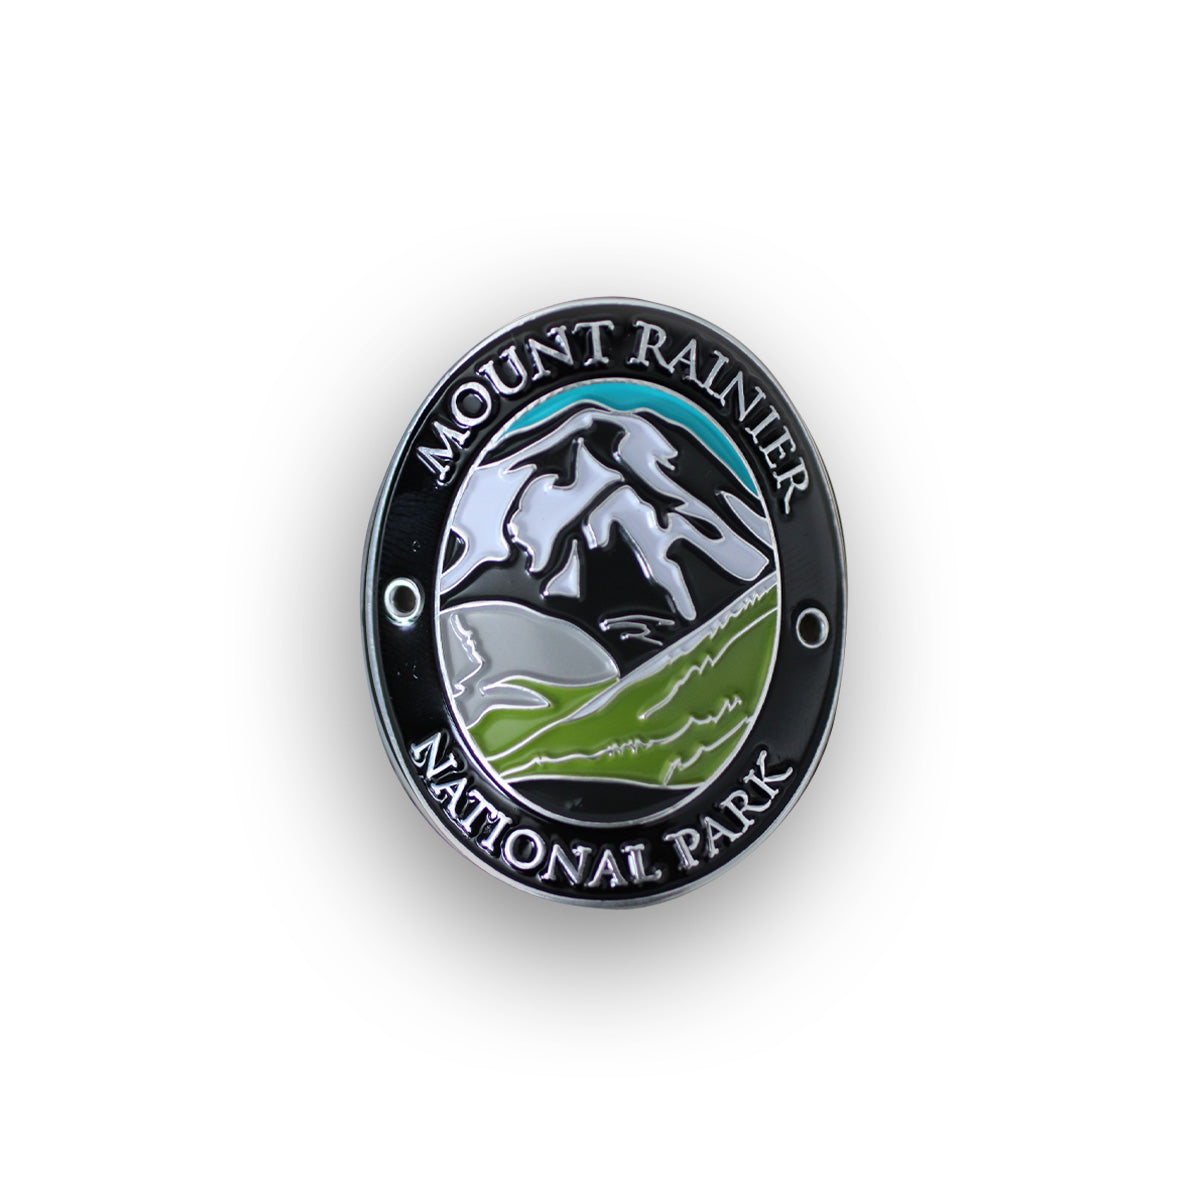 Mount Rainier National Park Traveler Walking Stick Medallion